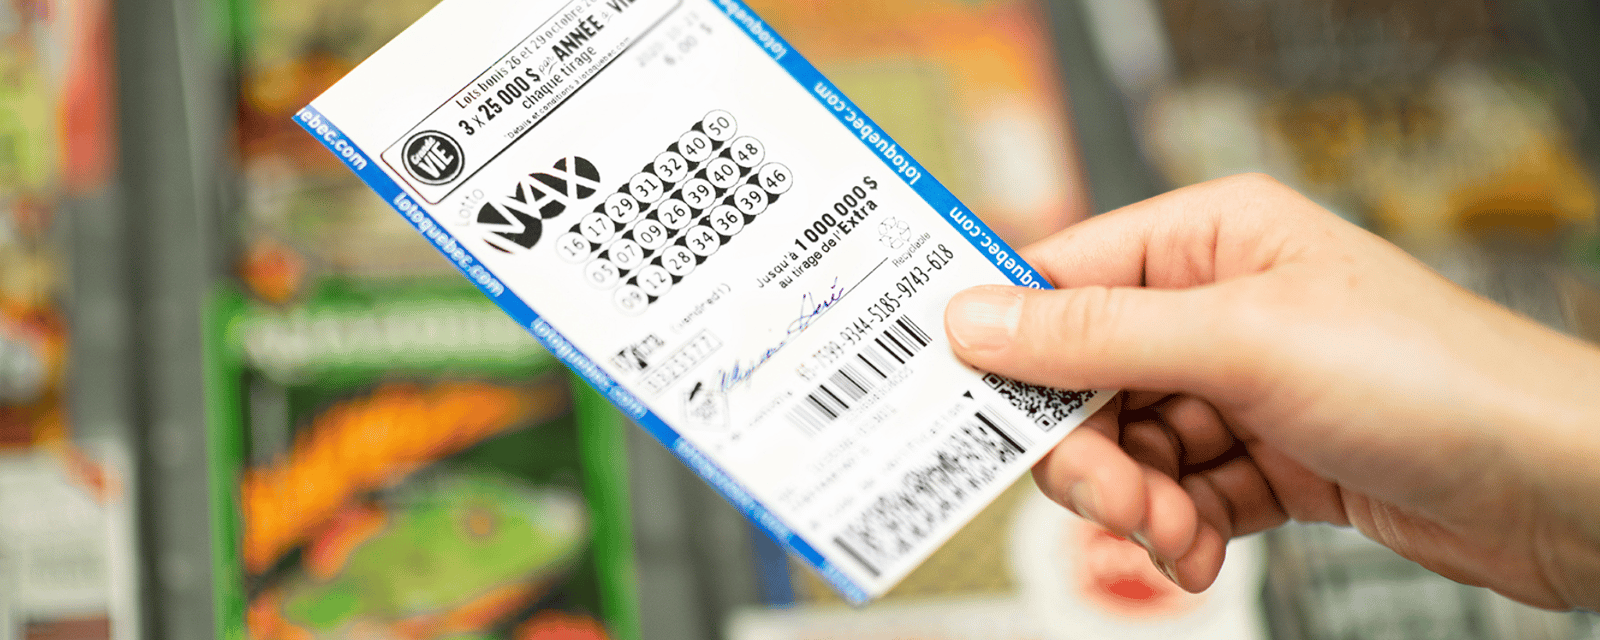 Près de 100 M$ à gagner au prochain tirage du Lotto Max avec un gros lot maximal